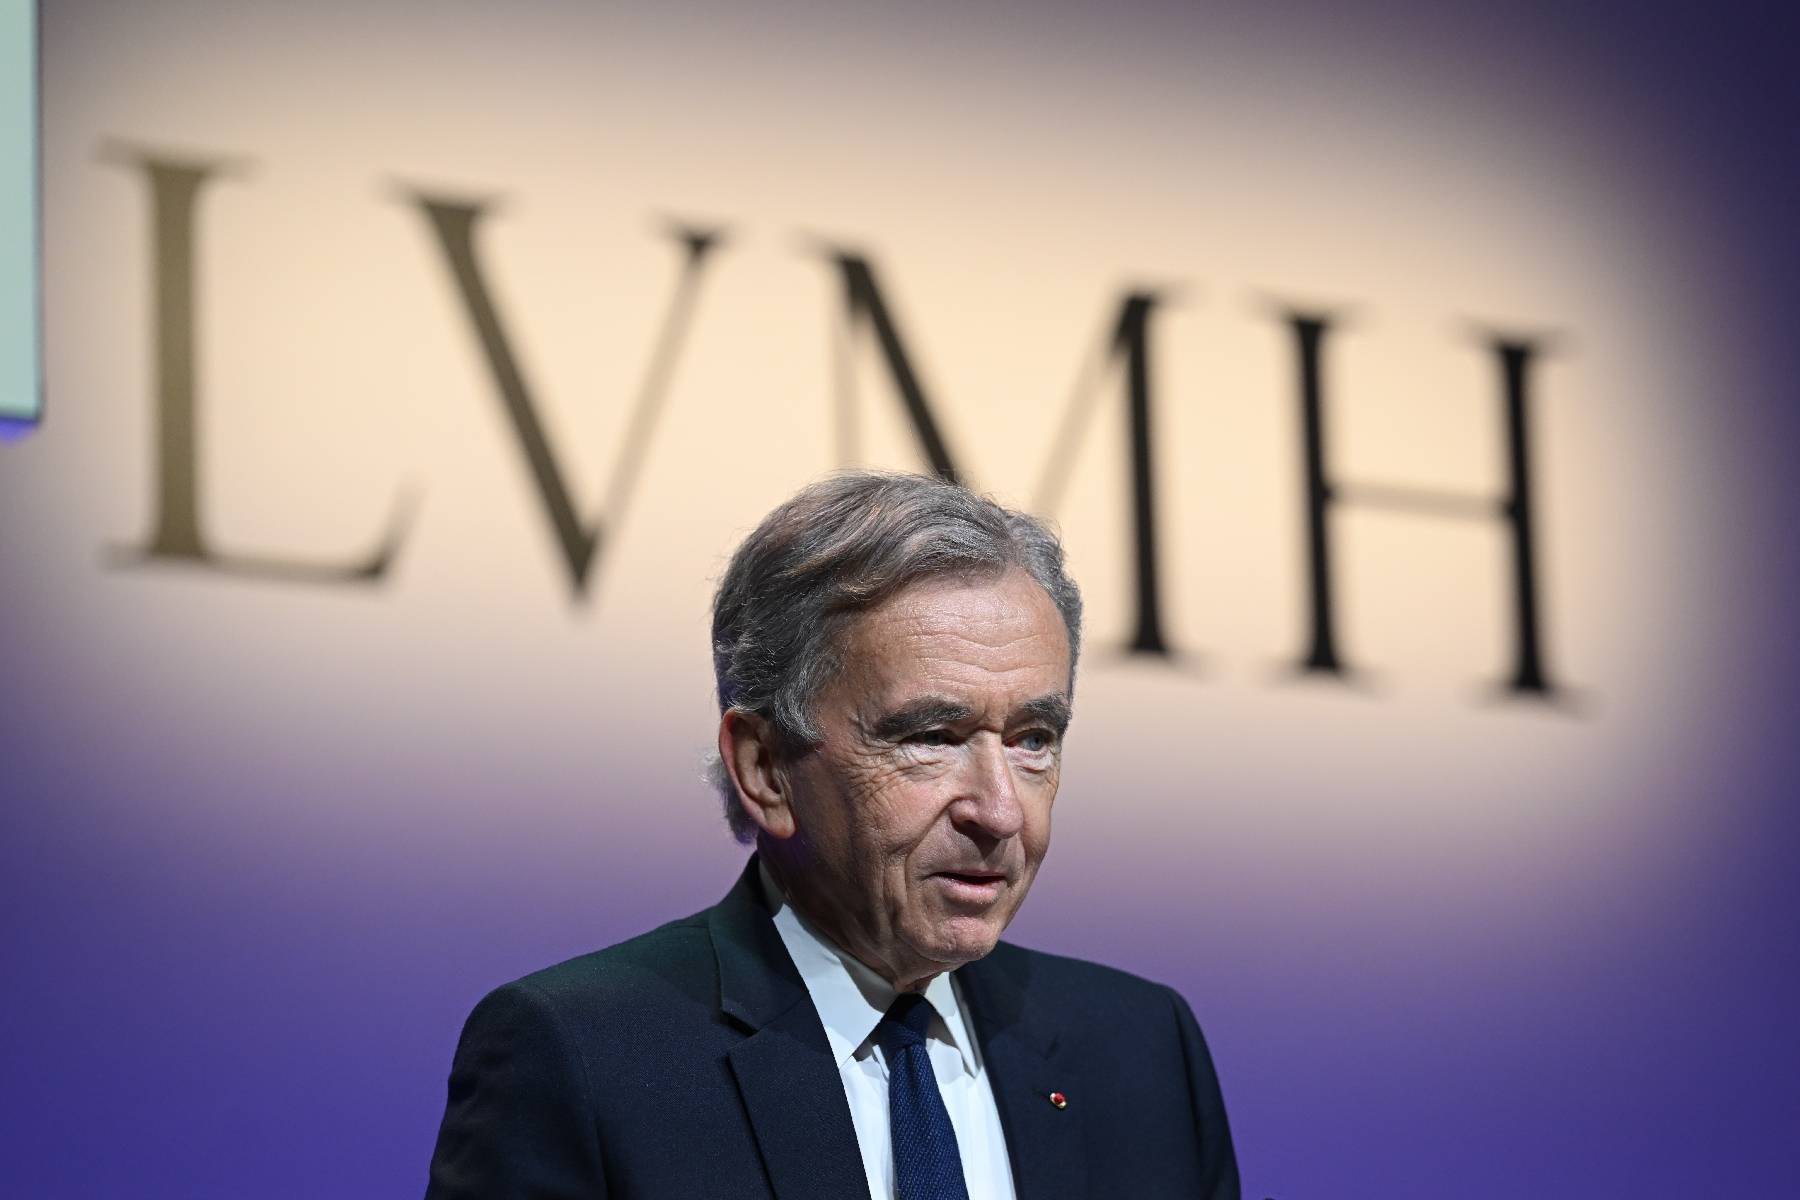 Ventes, bénéfices: le numéro un mondial du luxe LVMH atteint de nouveaux sommets